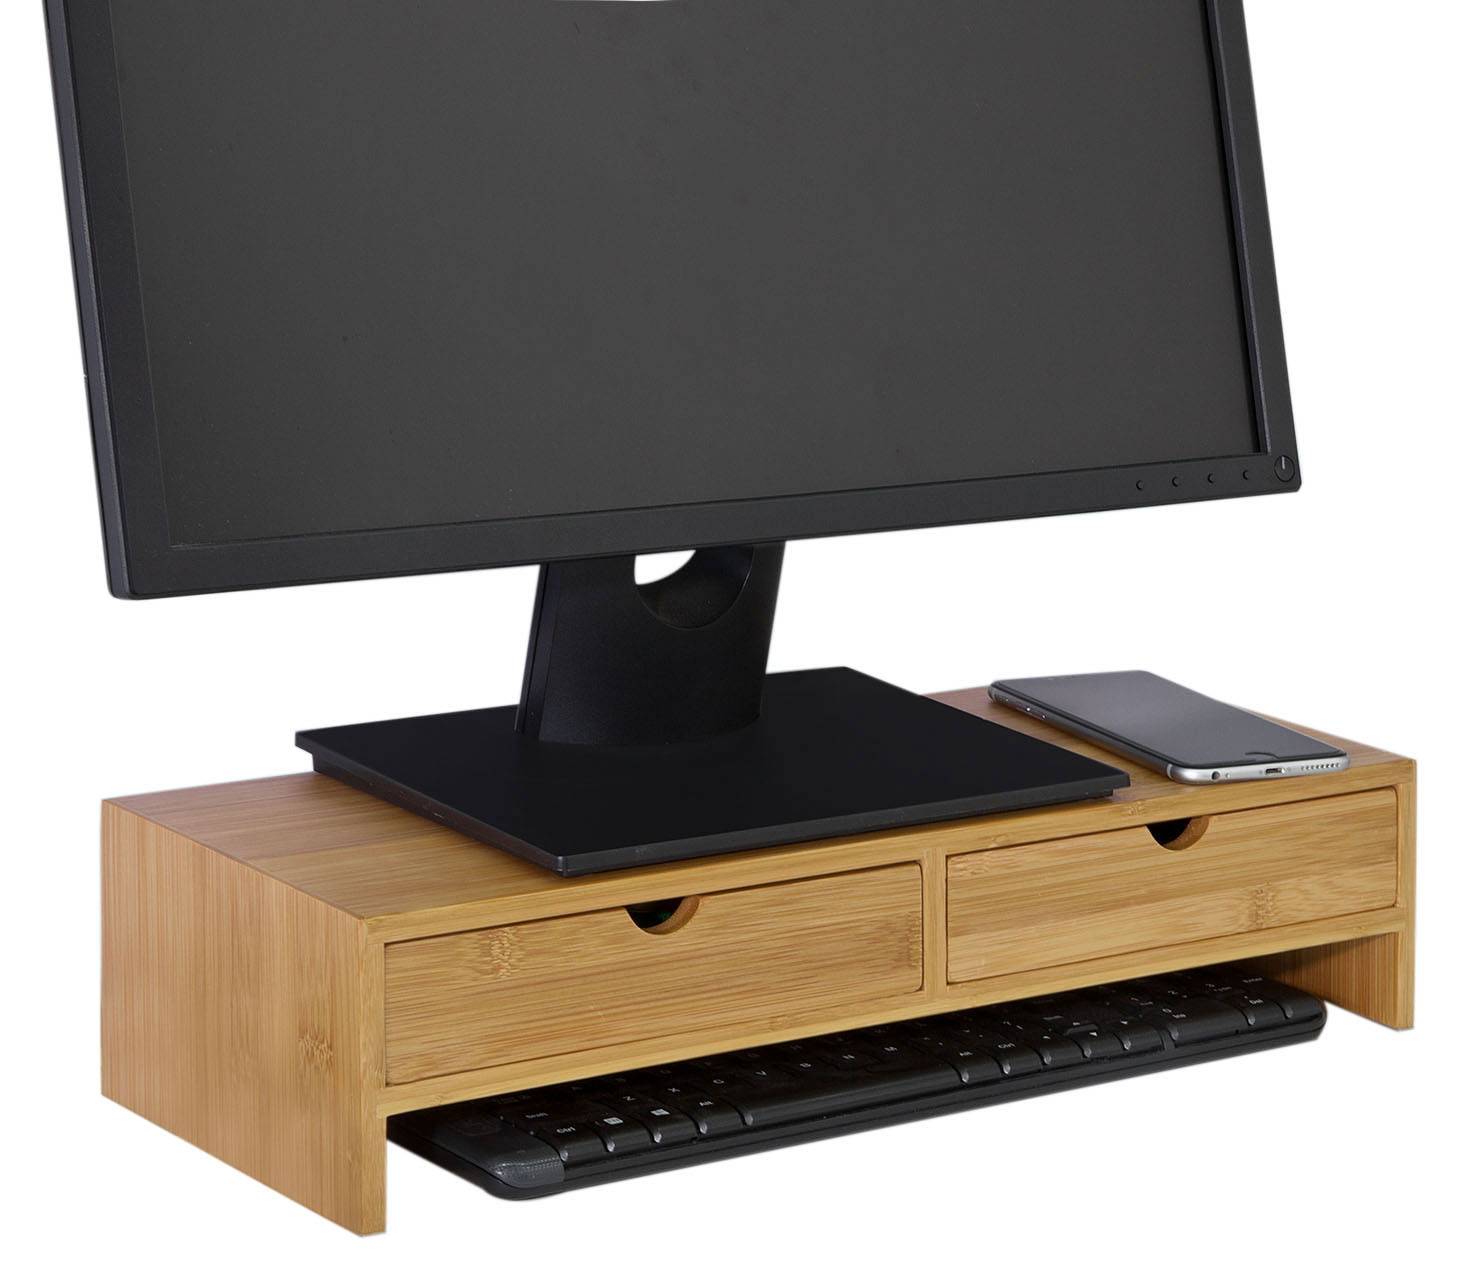 Monitorständer Holz Monitor erhöhung Ständer für 2 Monitore